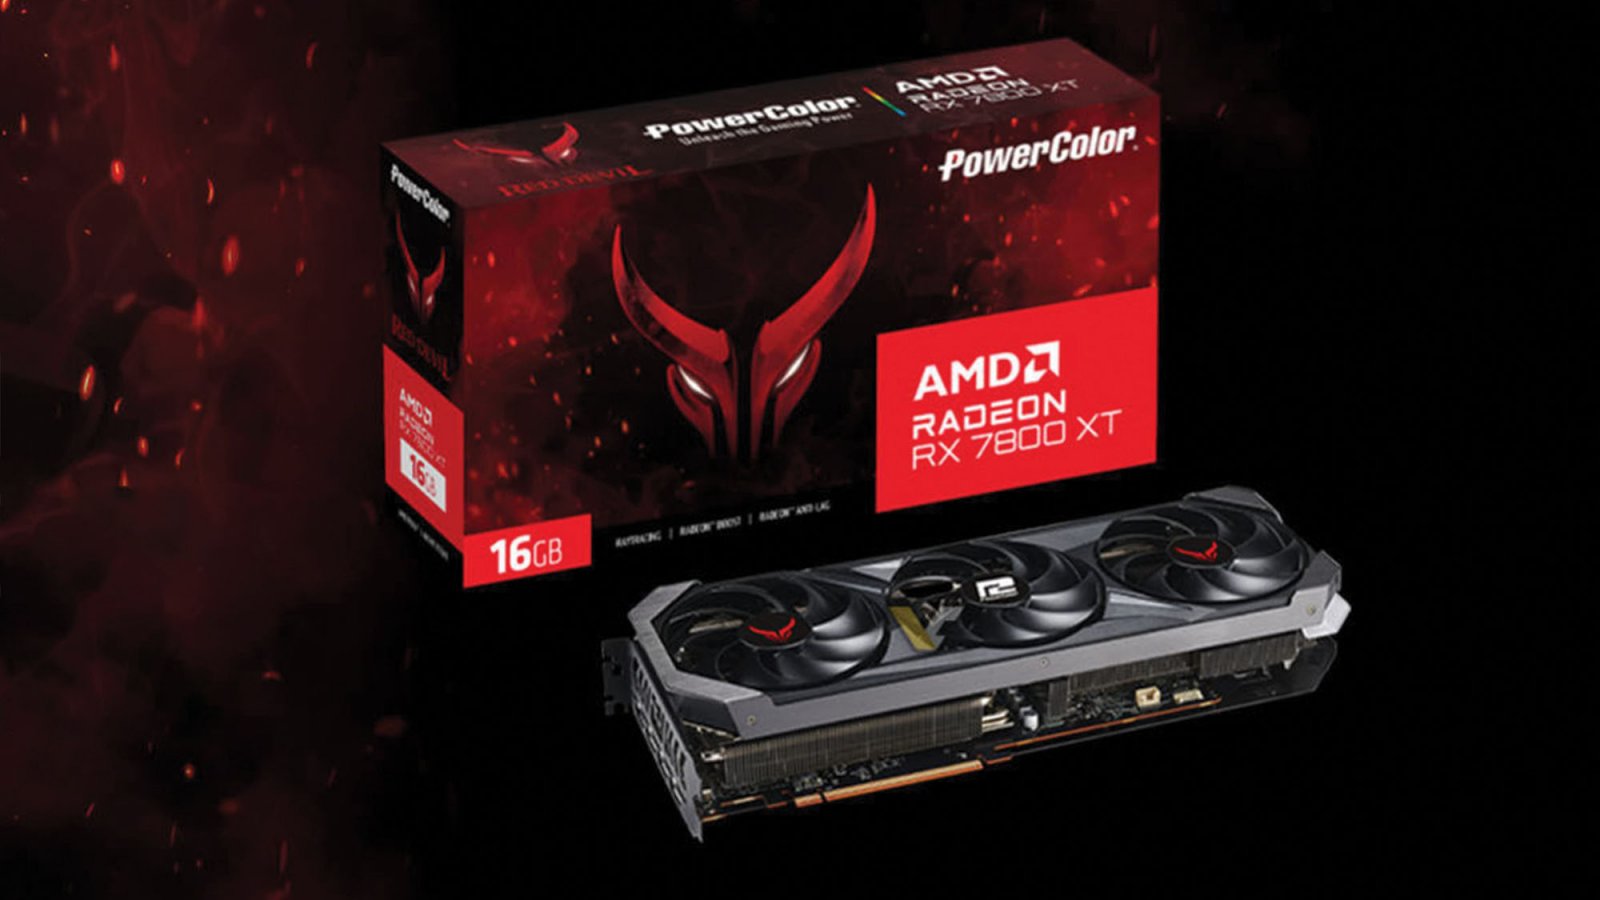 AMD Radeon RX 7800 XT: PowerColor svela a sorpresa tutti i dettagli della nuova scheda video